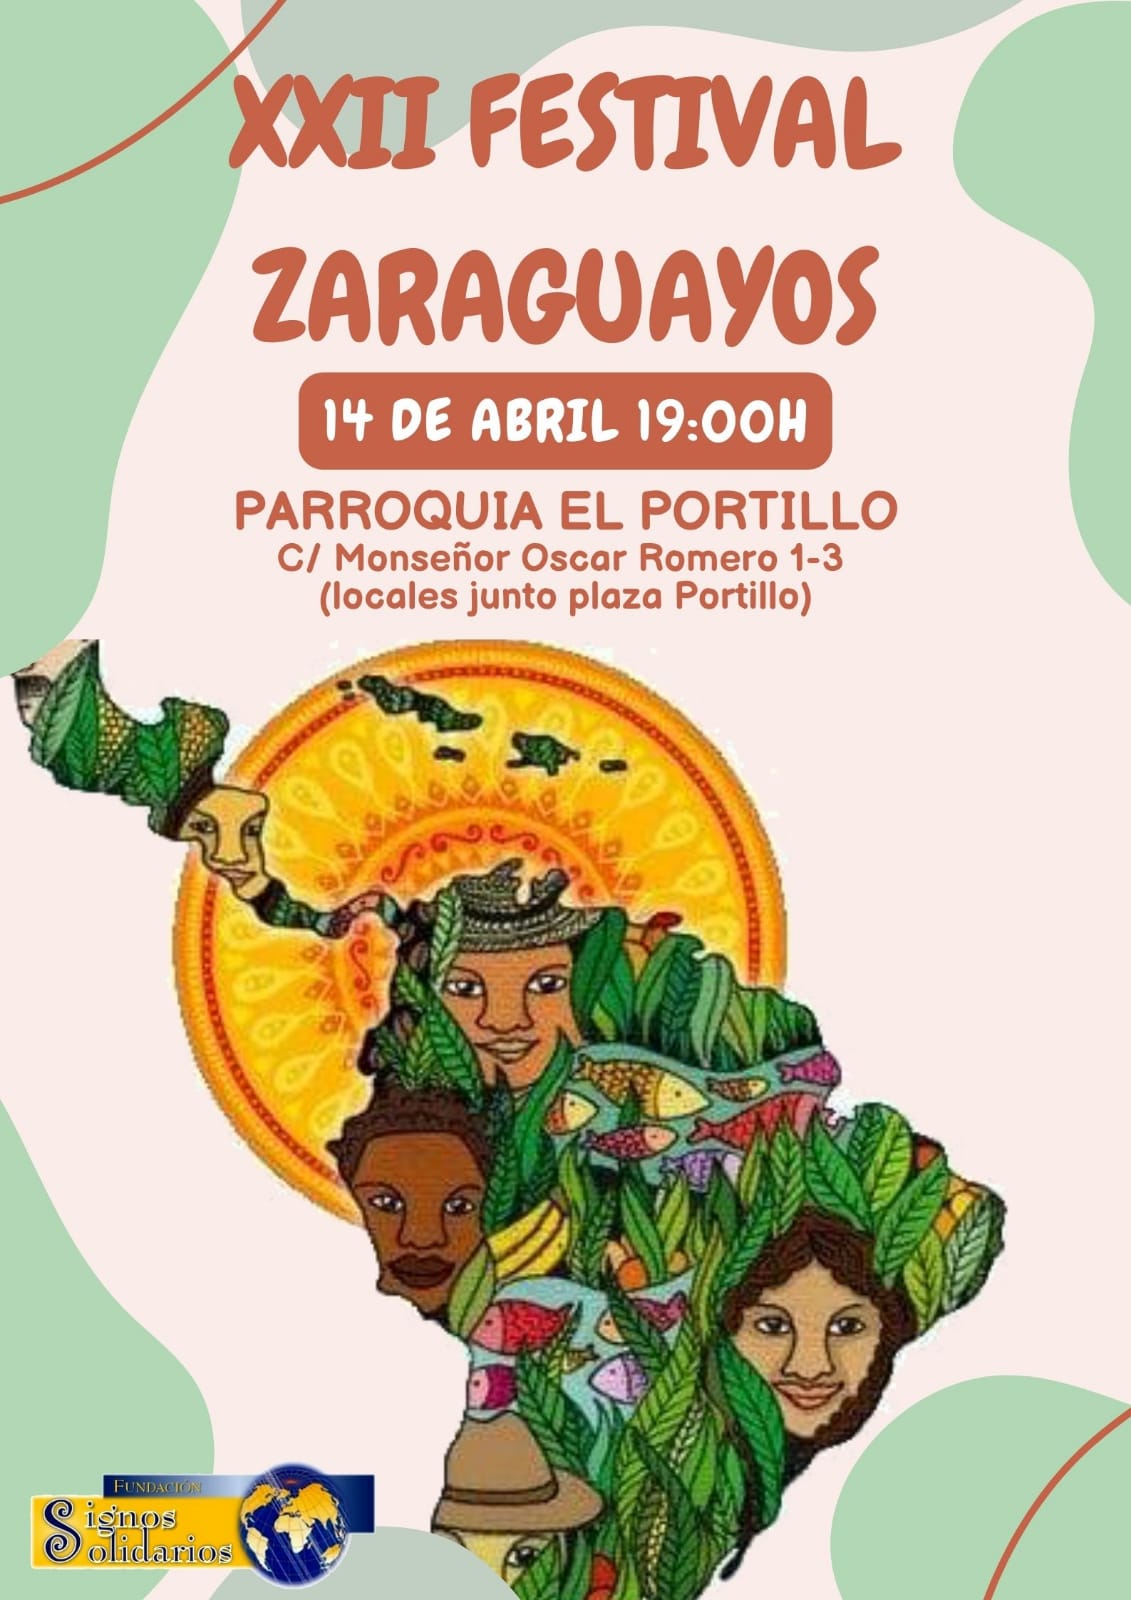 XXII FESTIVAL DE ZARAGUAYOS